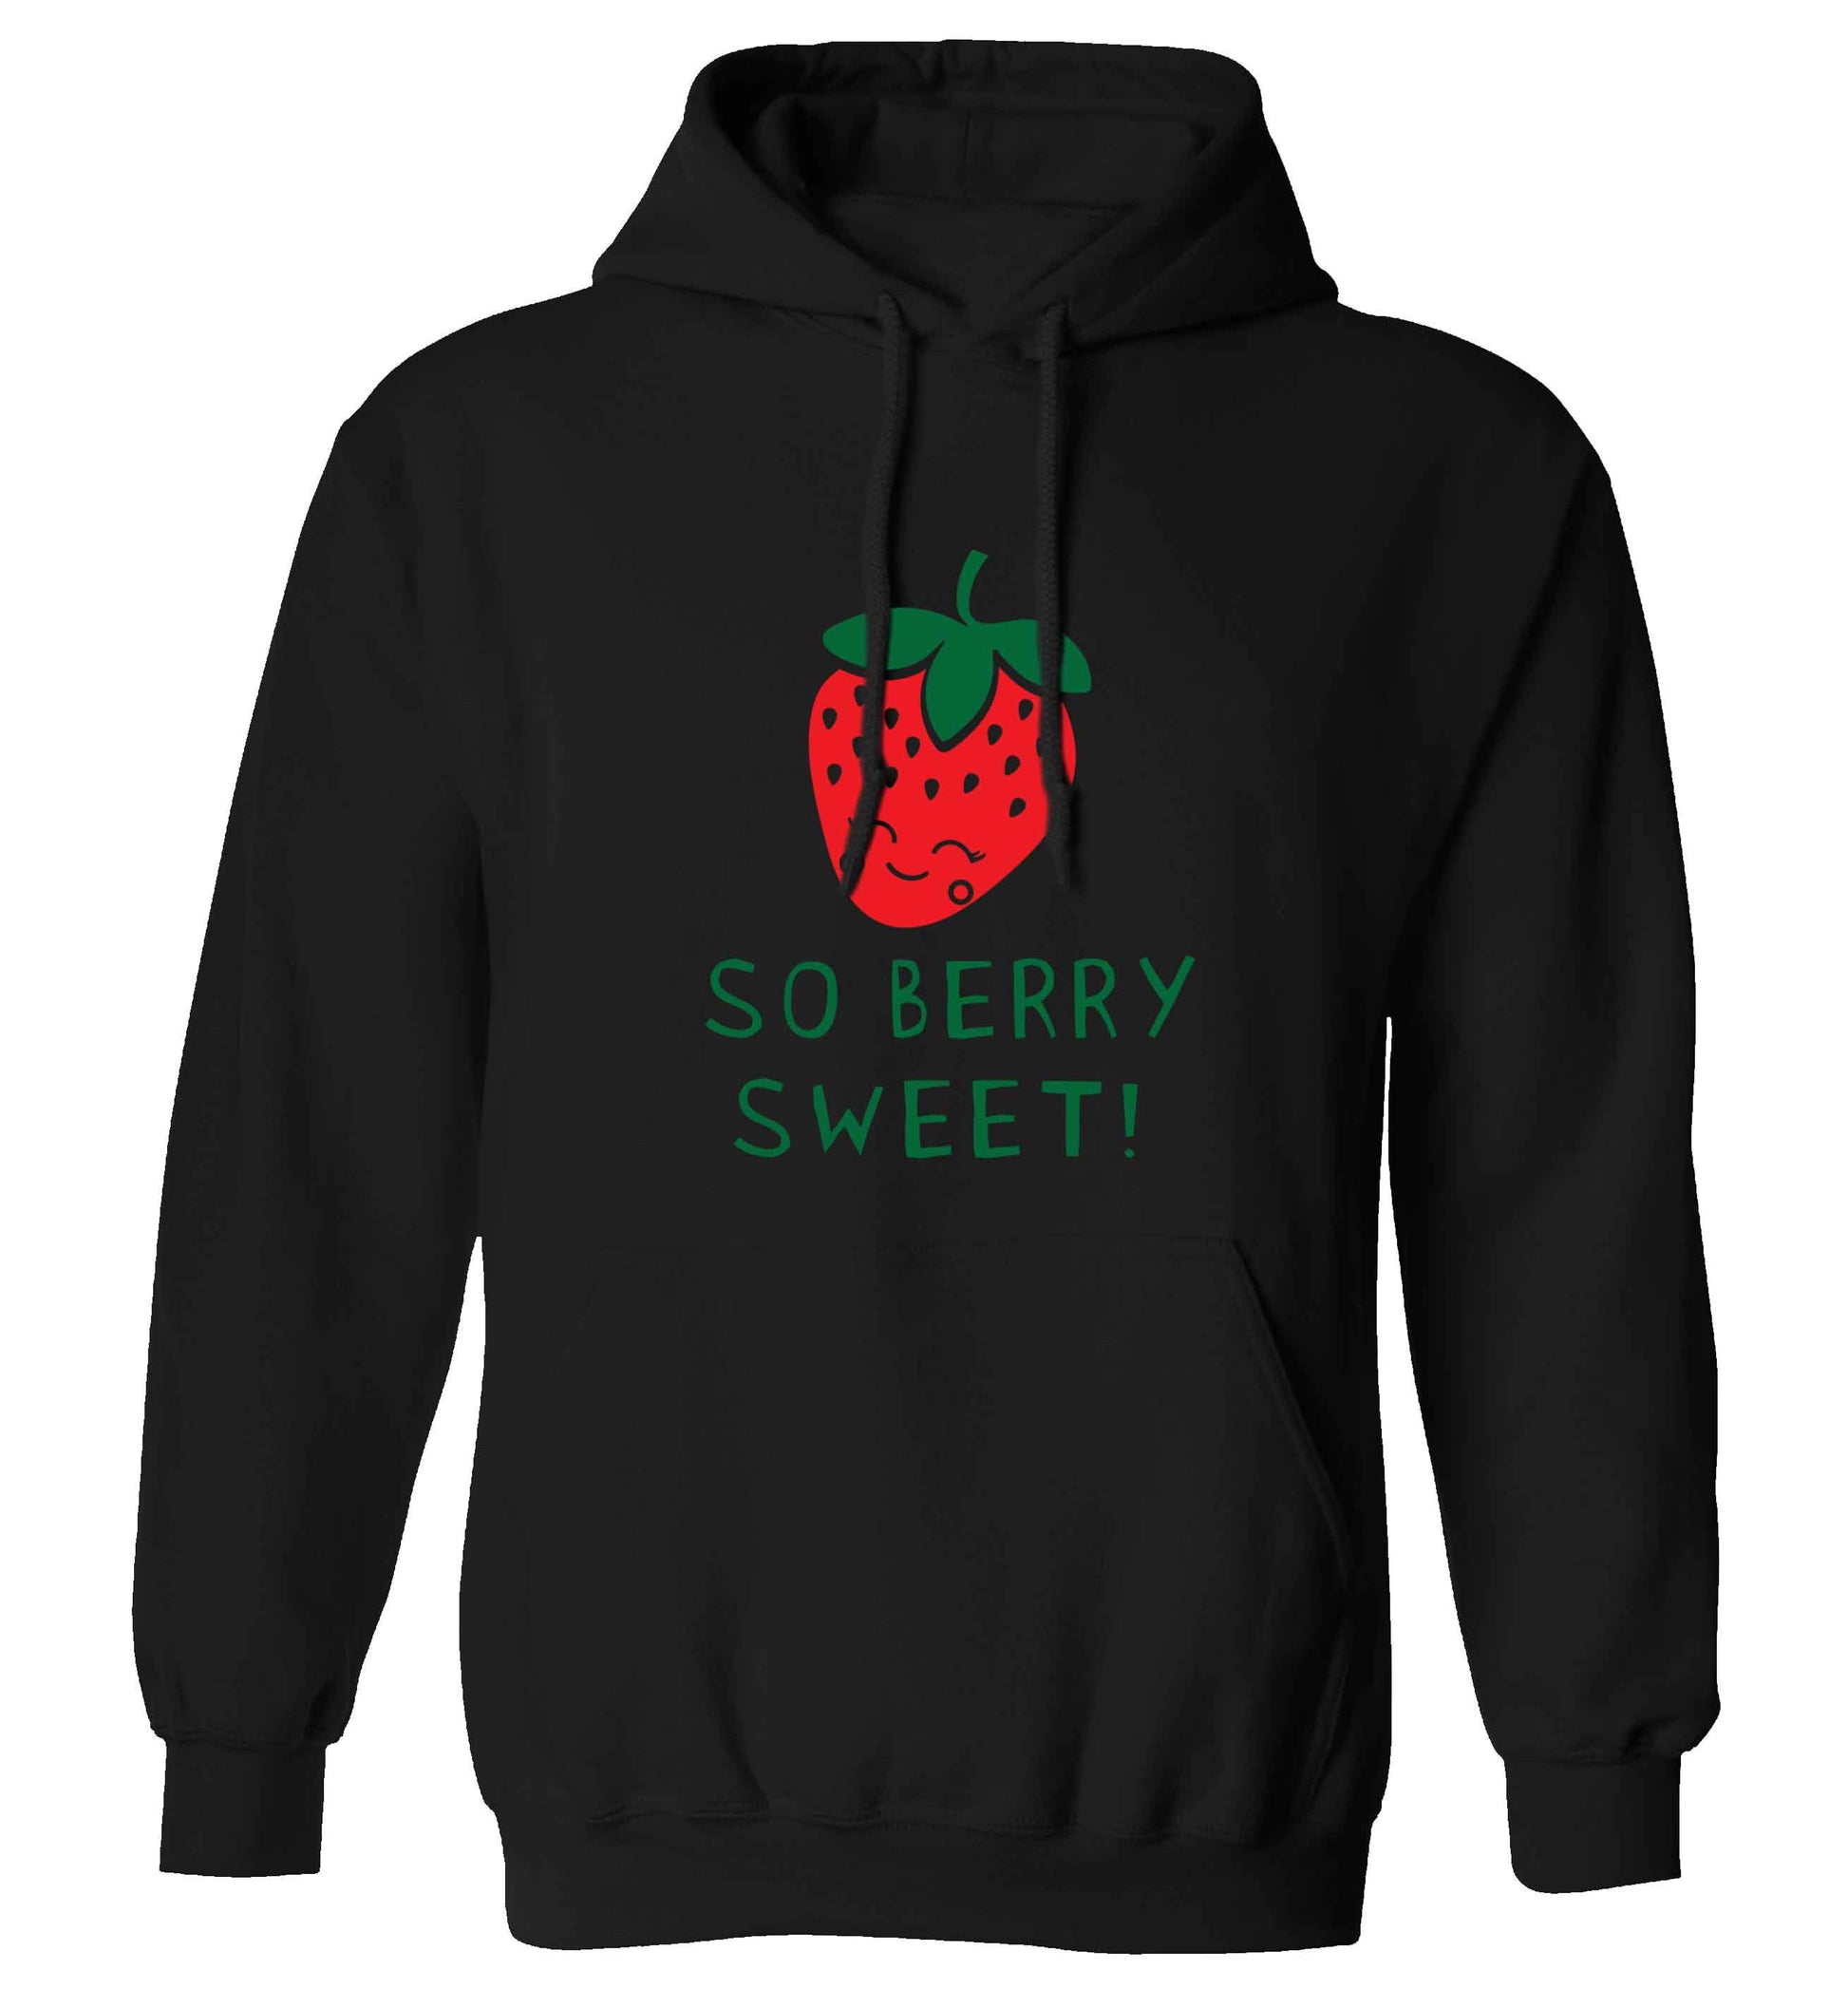 So berry sweet adults unisex black hoodie 2XL